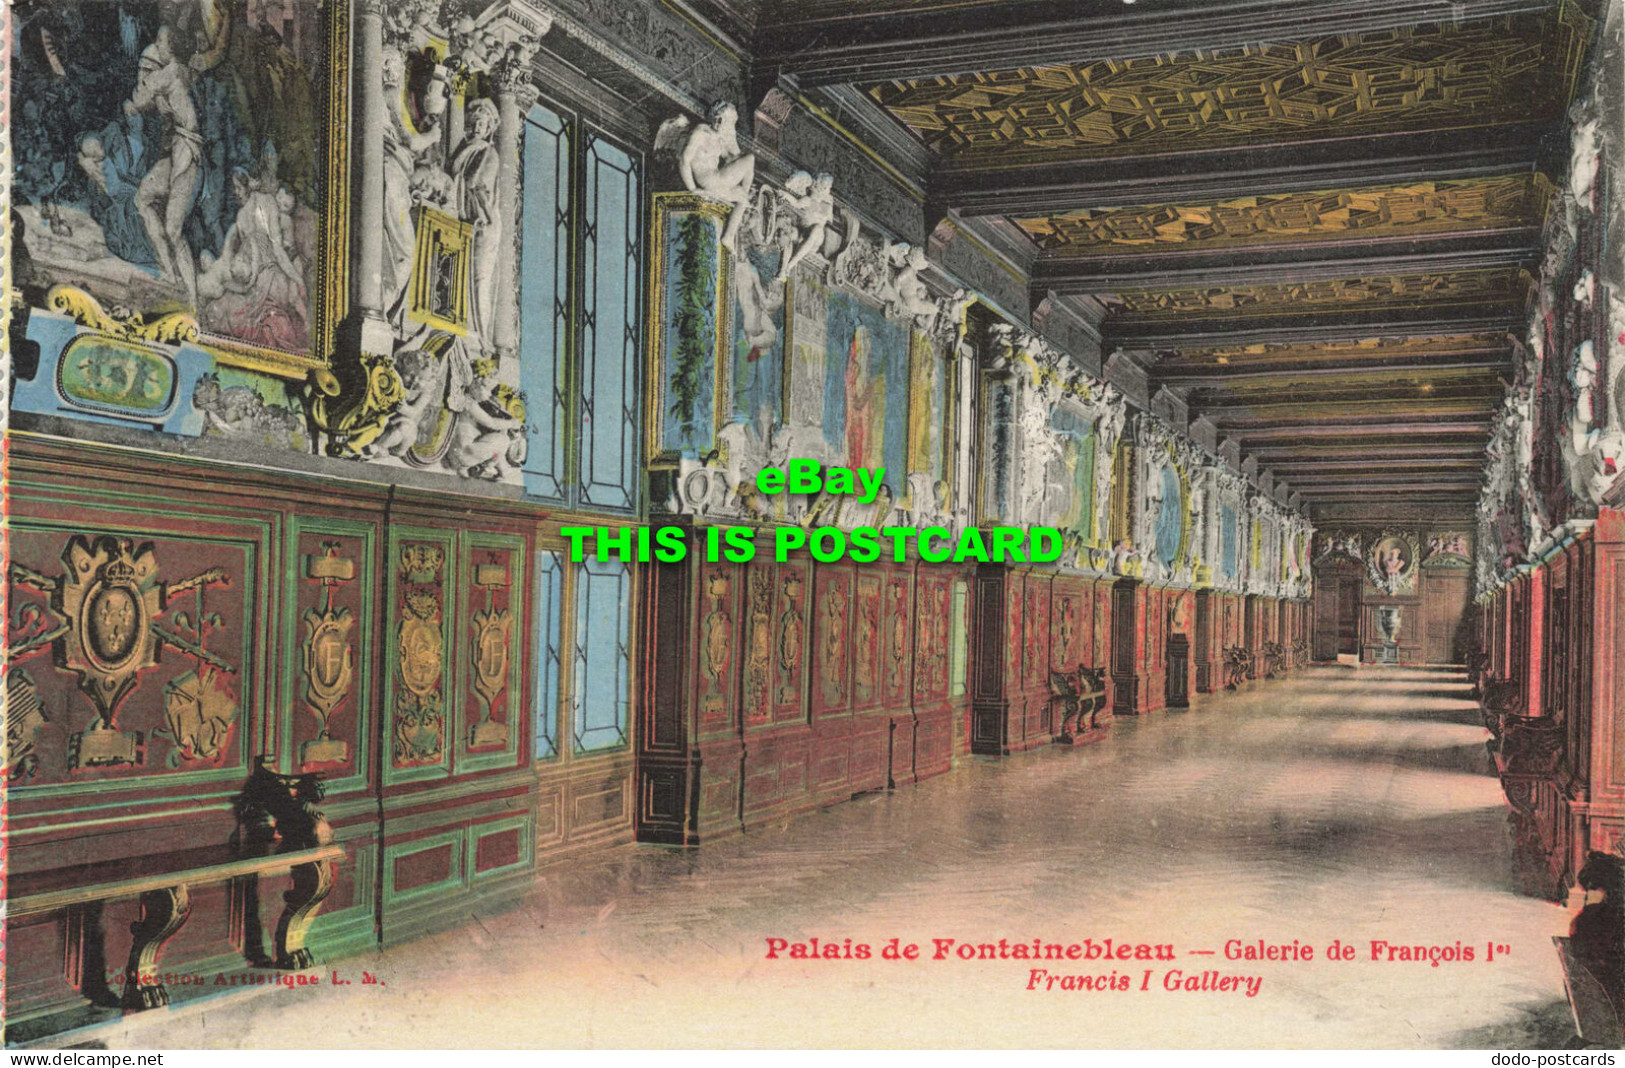 R601438 Collection Artistique L. M. Palais De Fontainebleau. Galerie De Francois - Welt